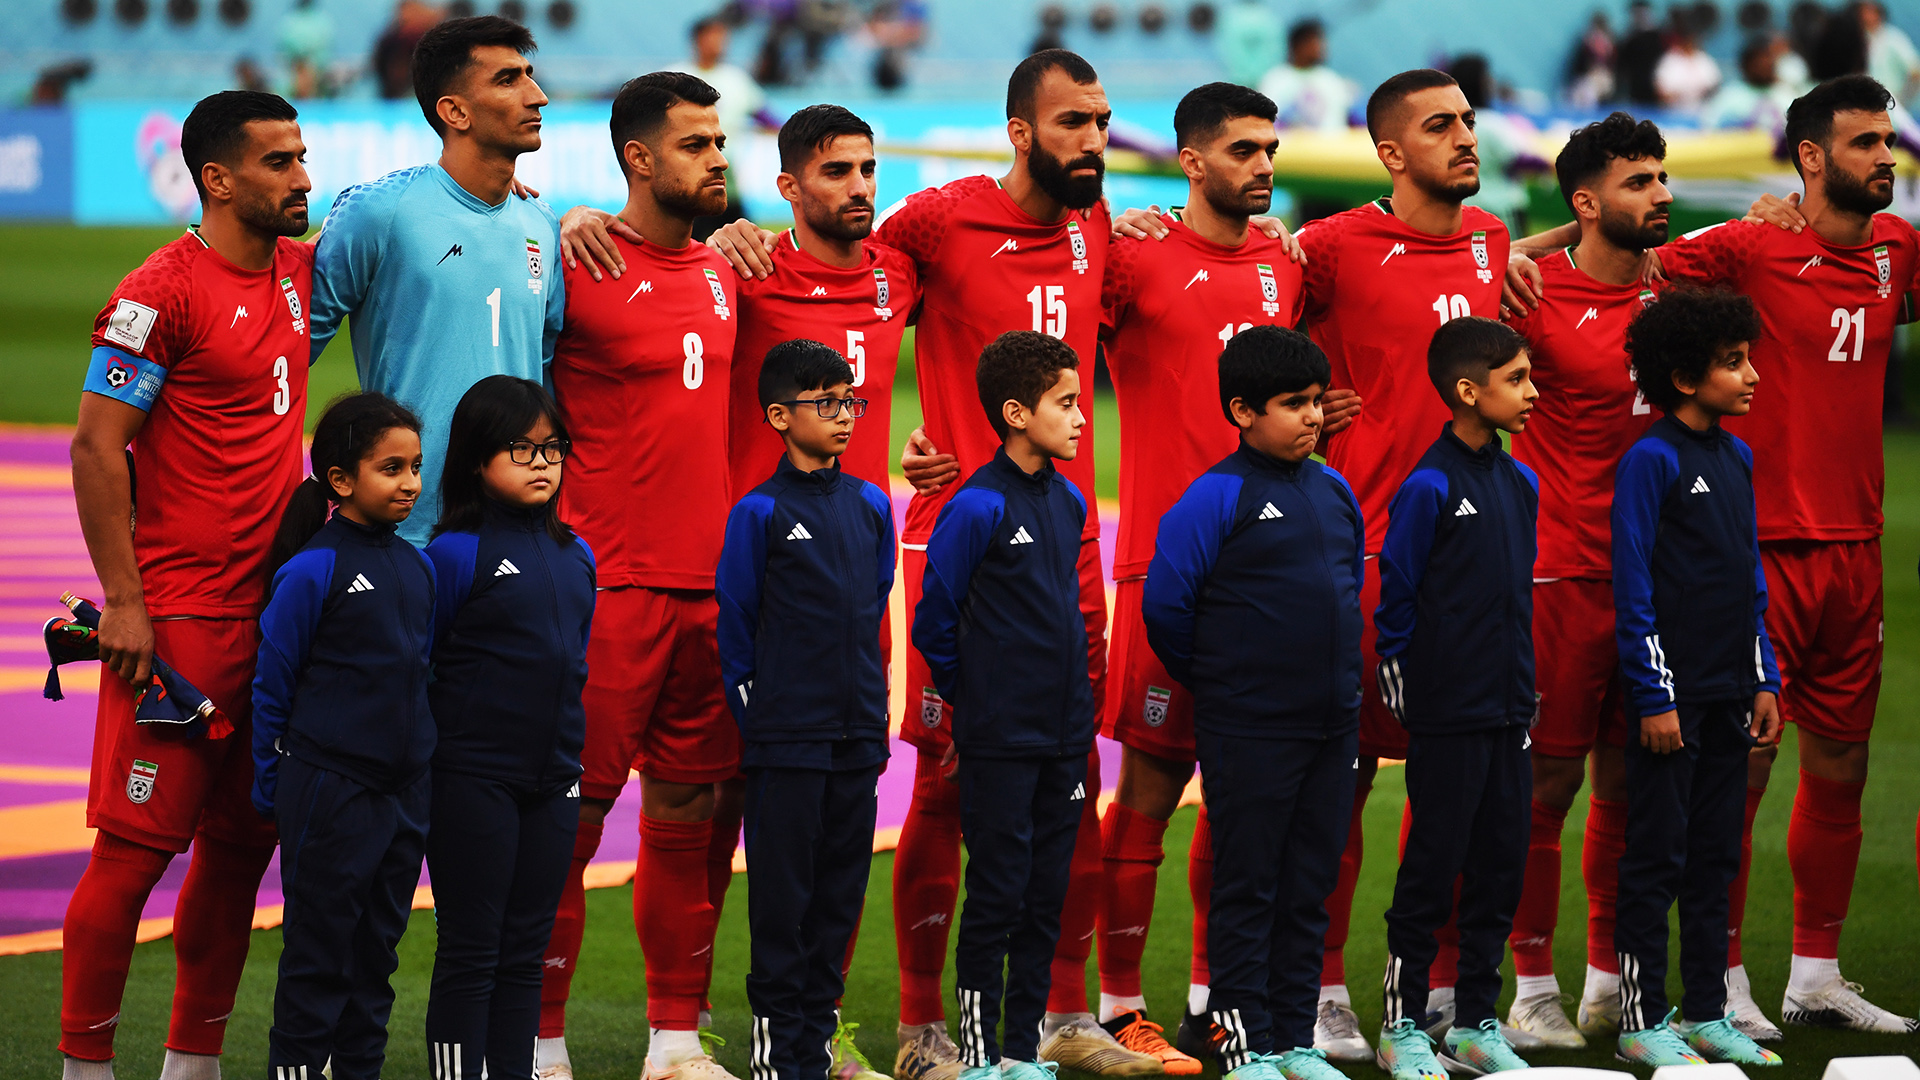 Die iranische Fußball-Nationalmannschaft steht während der Nationalhymne Schulter an Schulter und singt nicht. | EPA